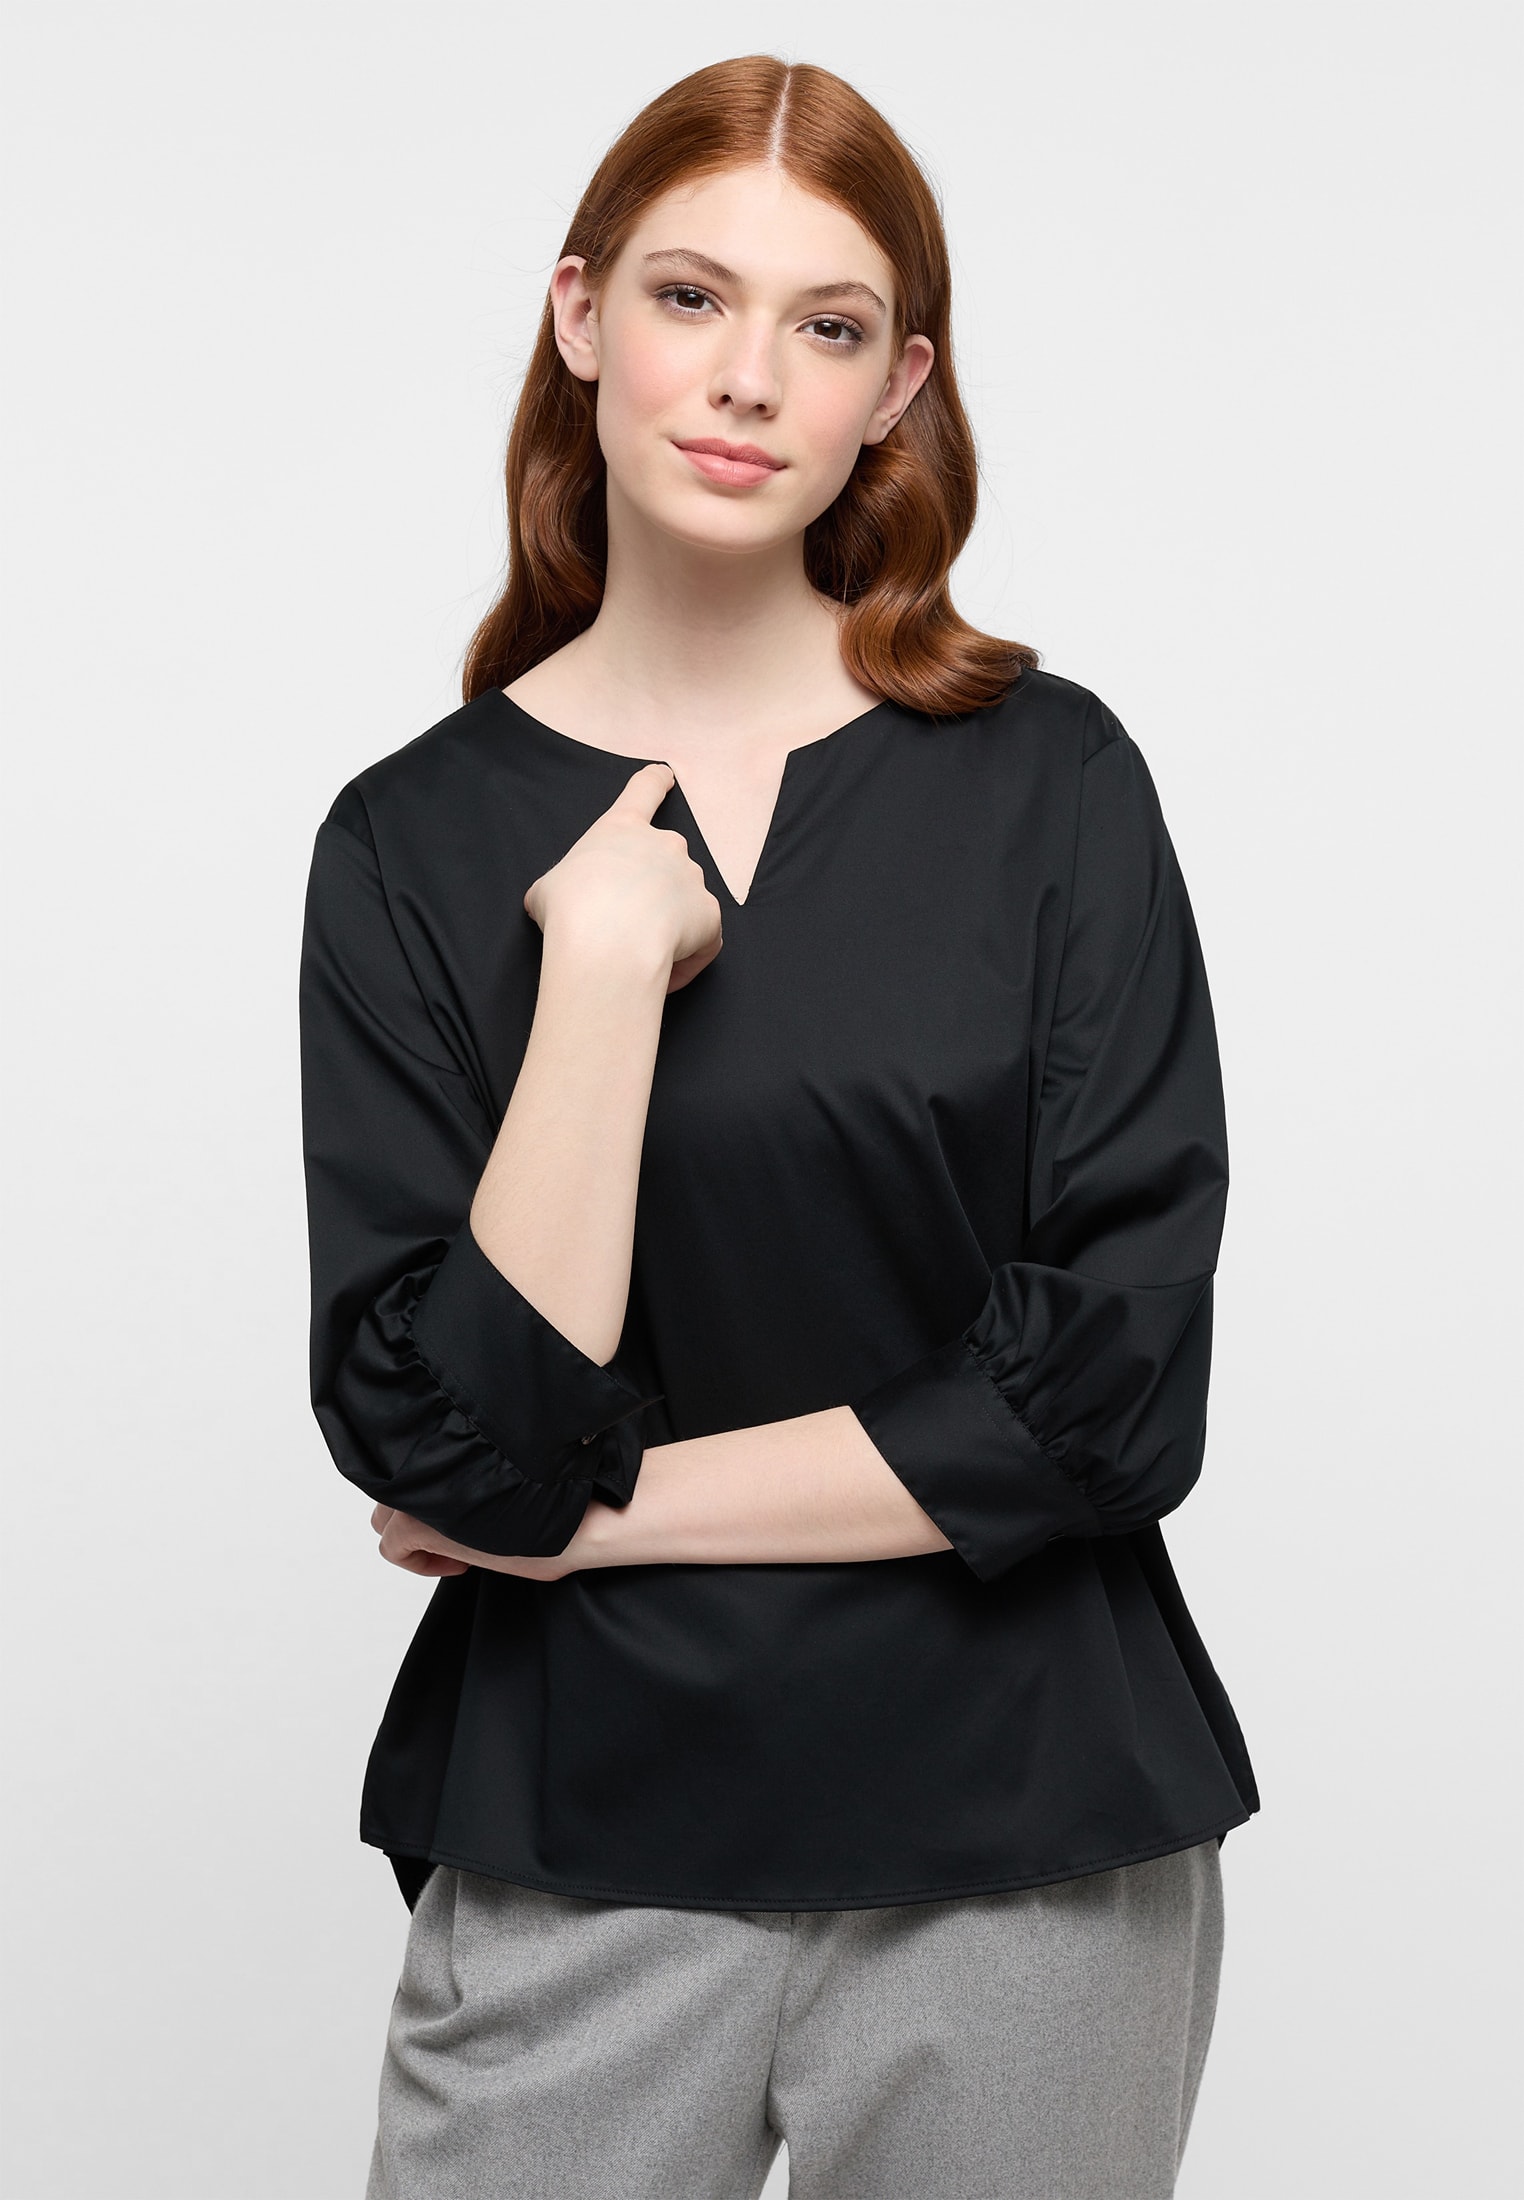 Satin Shirt Bluse in schwarz unifarben | schwarz | 44 | 3/4-Arm |  2BL03924-03-91-44-3/4